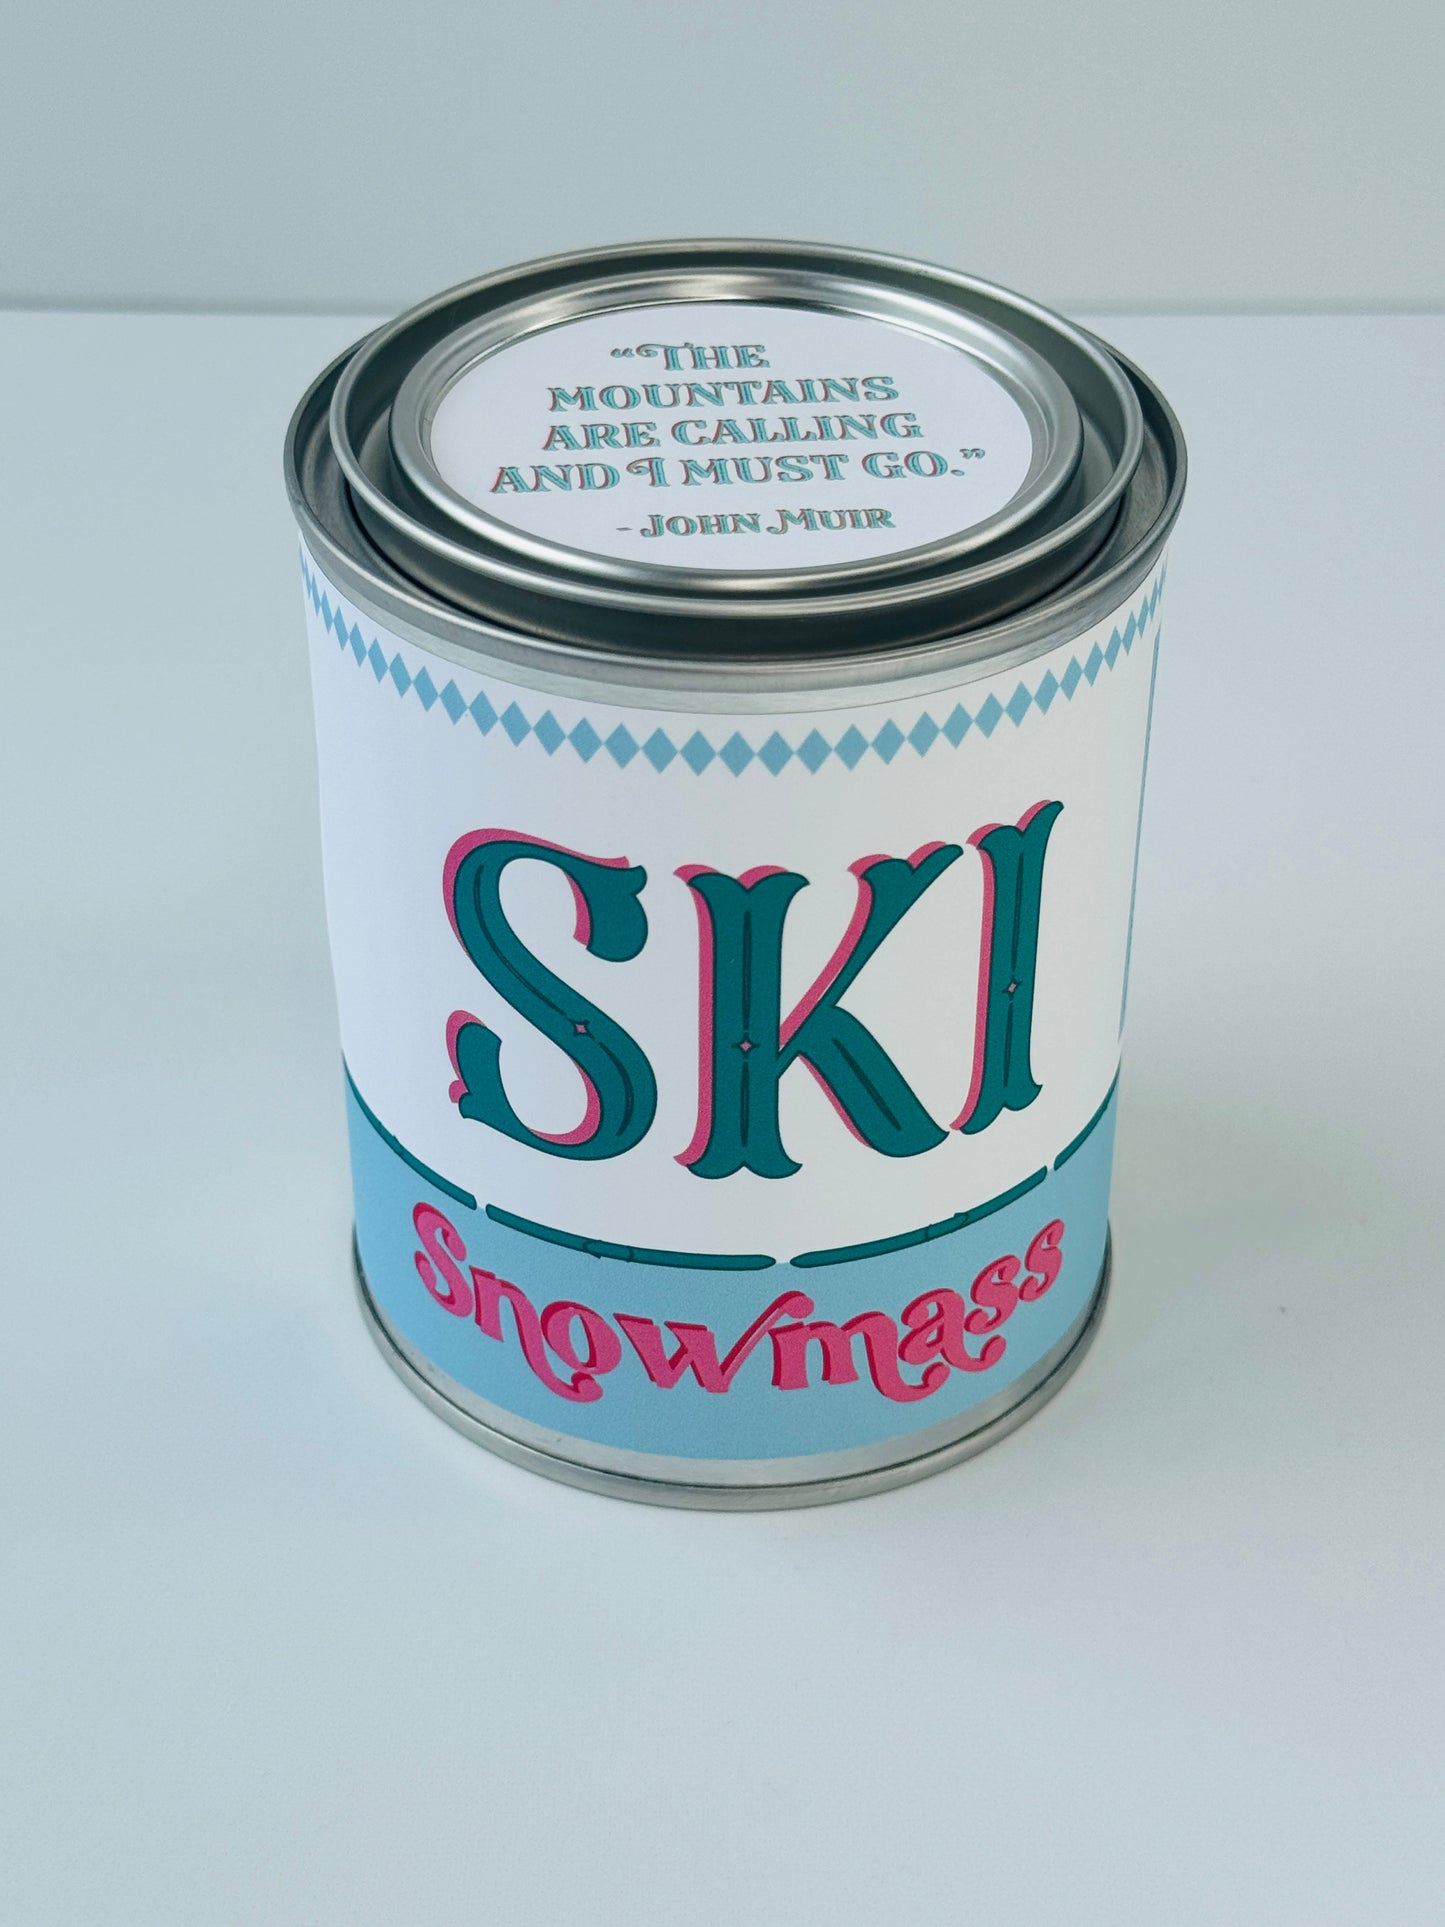 Ski Snowmass - Paint Tin Candle